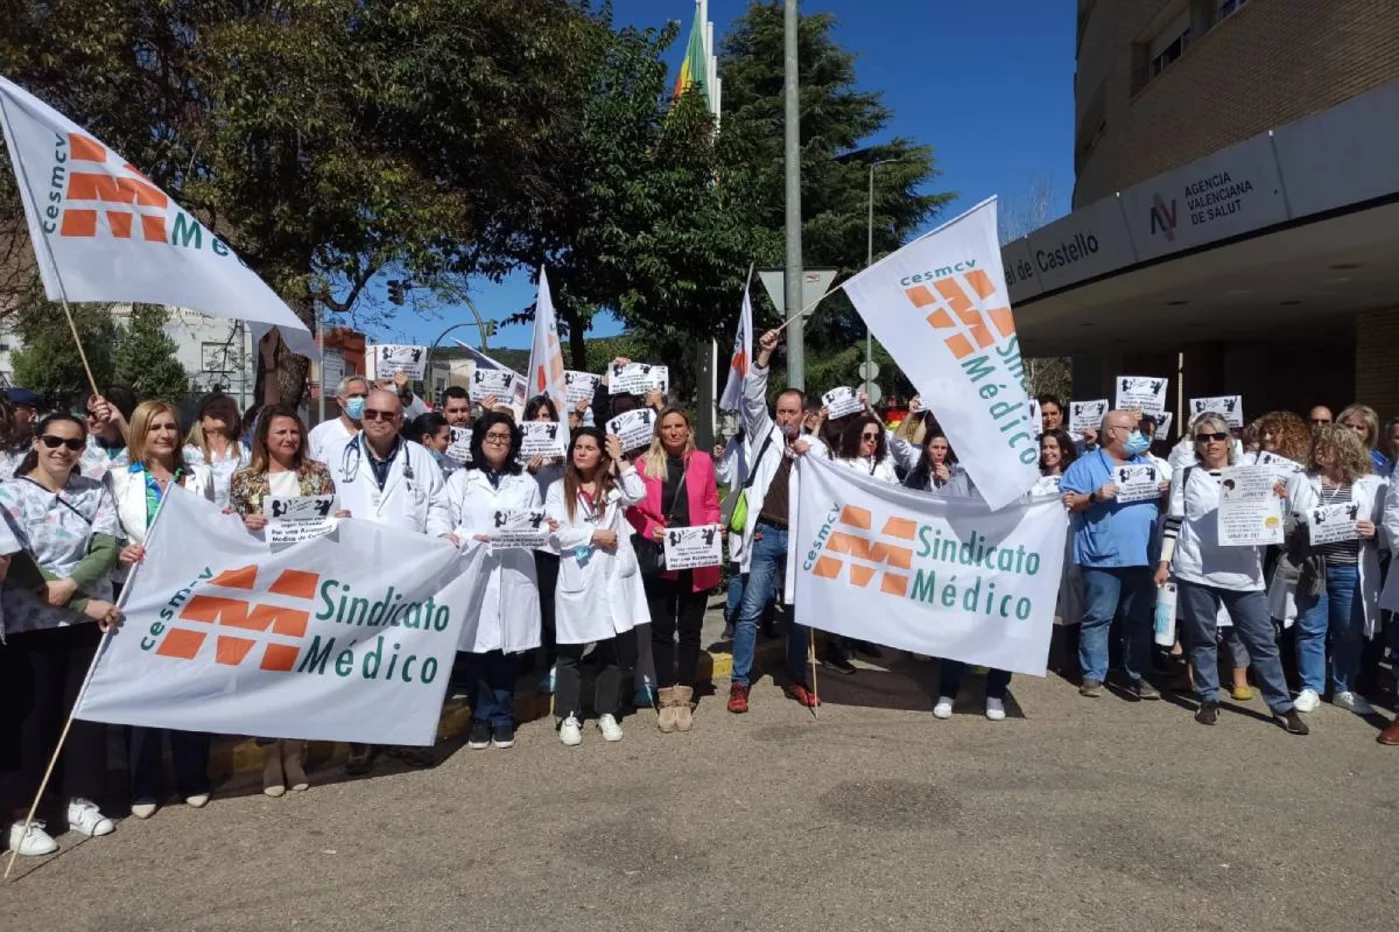 Médicos en una concentración organizada por CESM-CV frente al Hospital de Castellón. Foto: CESM-CV